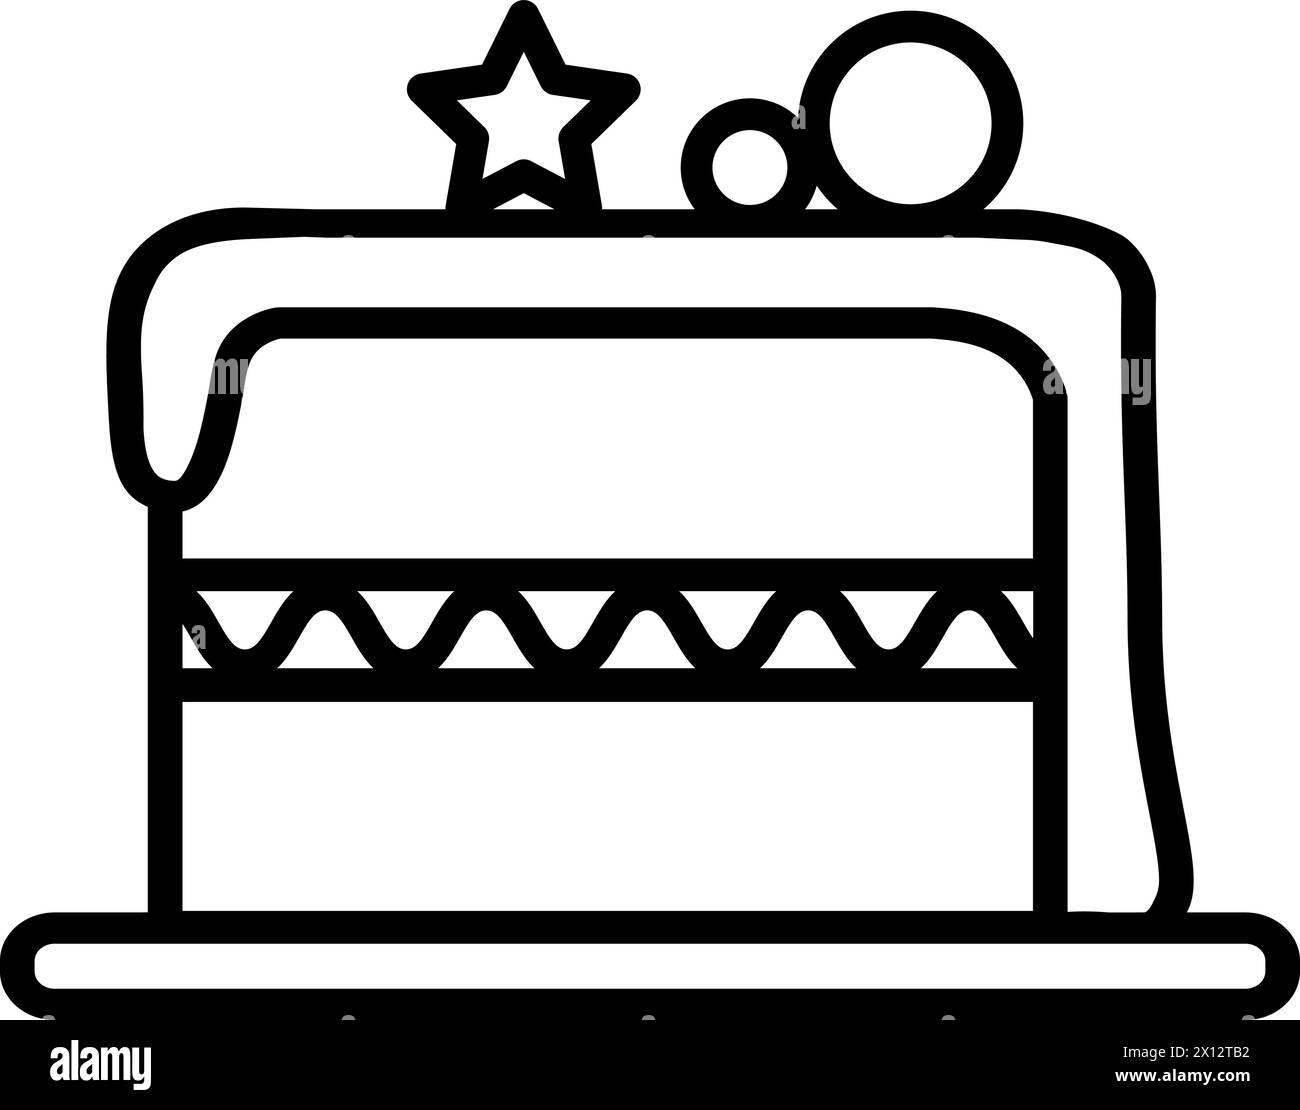 Ein Stück Kuchen, gefüllt mit Glasur, Geburtstagsfeier-Symbol. Umriss des festlichen Stückes für die Gestaltung des Kinderunterhaltungs-Zentrums. Einfache Linea Stock Vektor